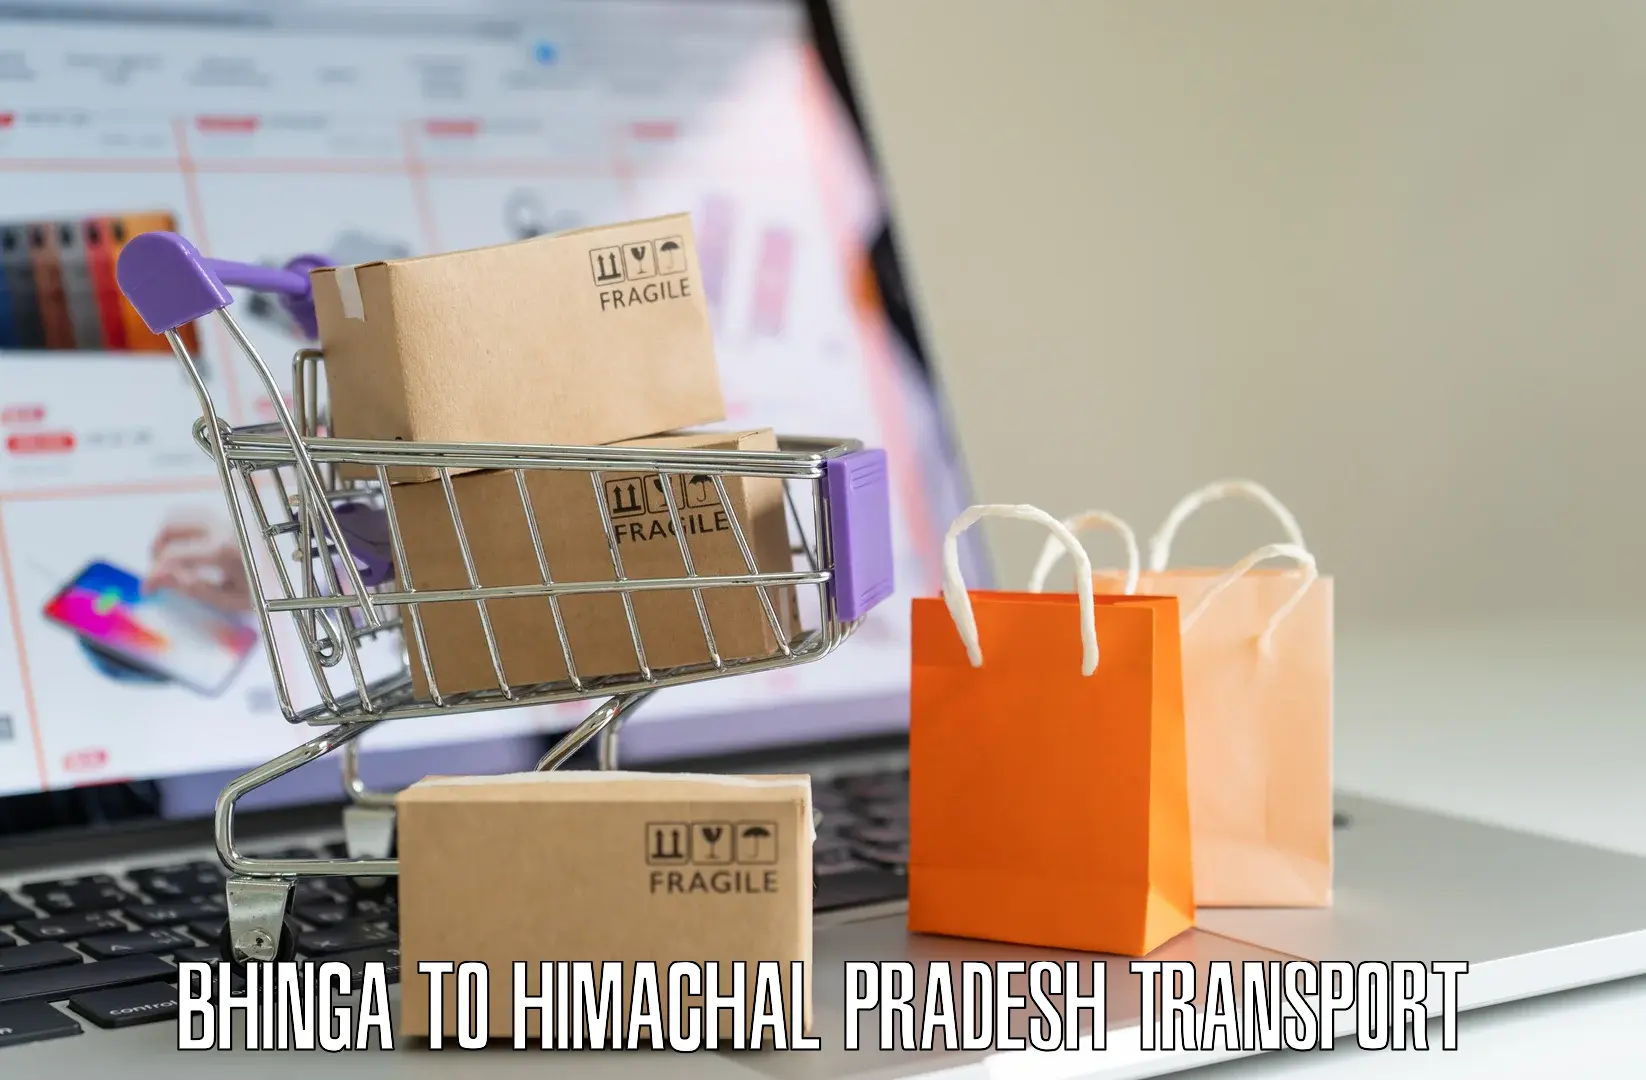 Road transport online services Bhinga to Anni Kullu